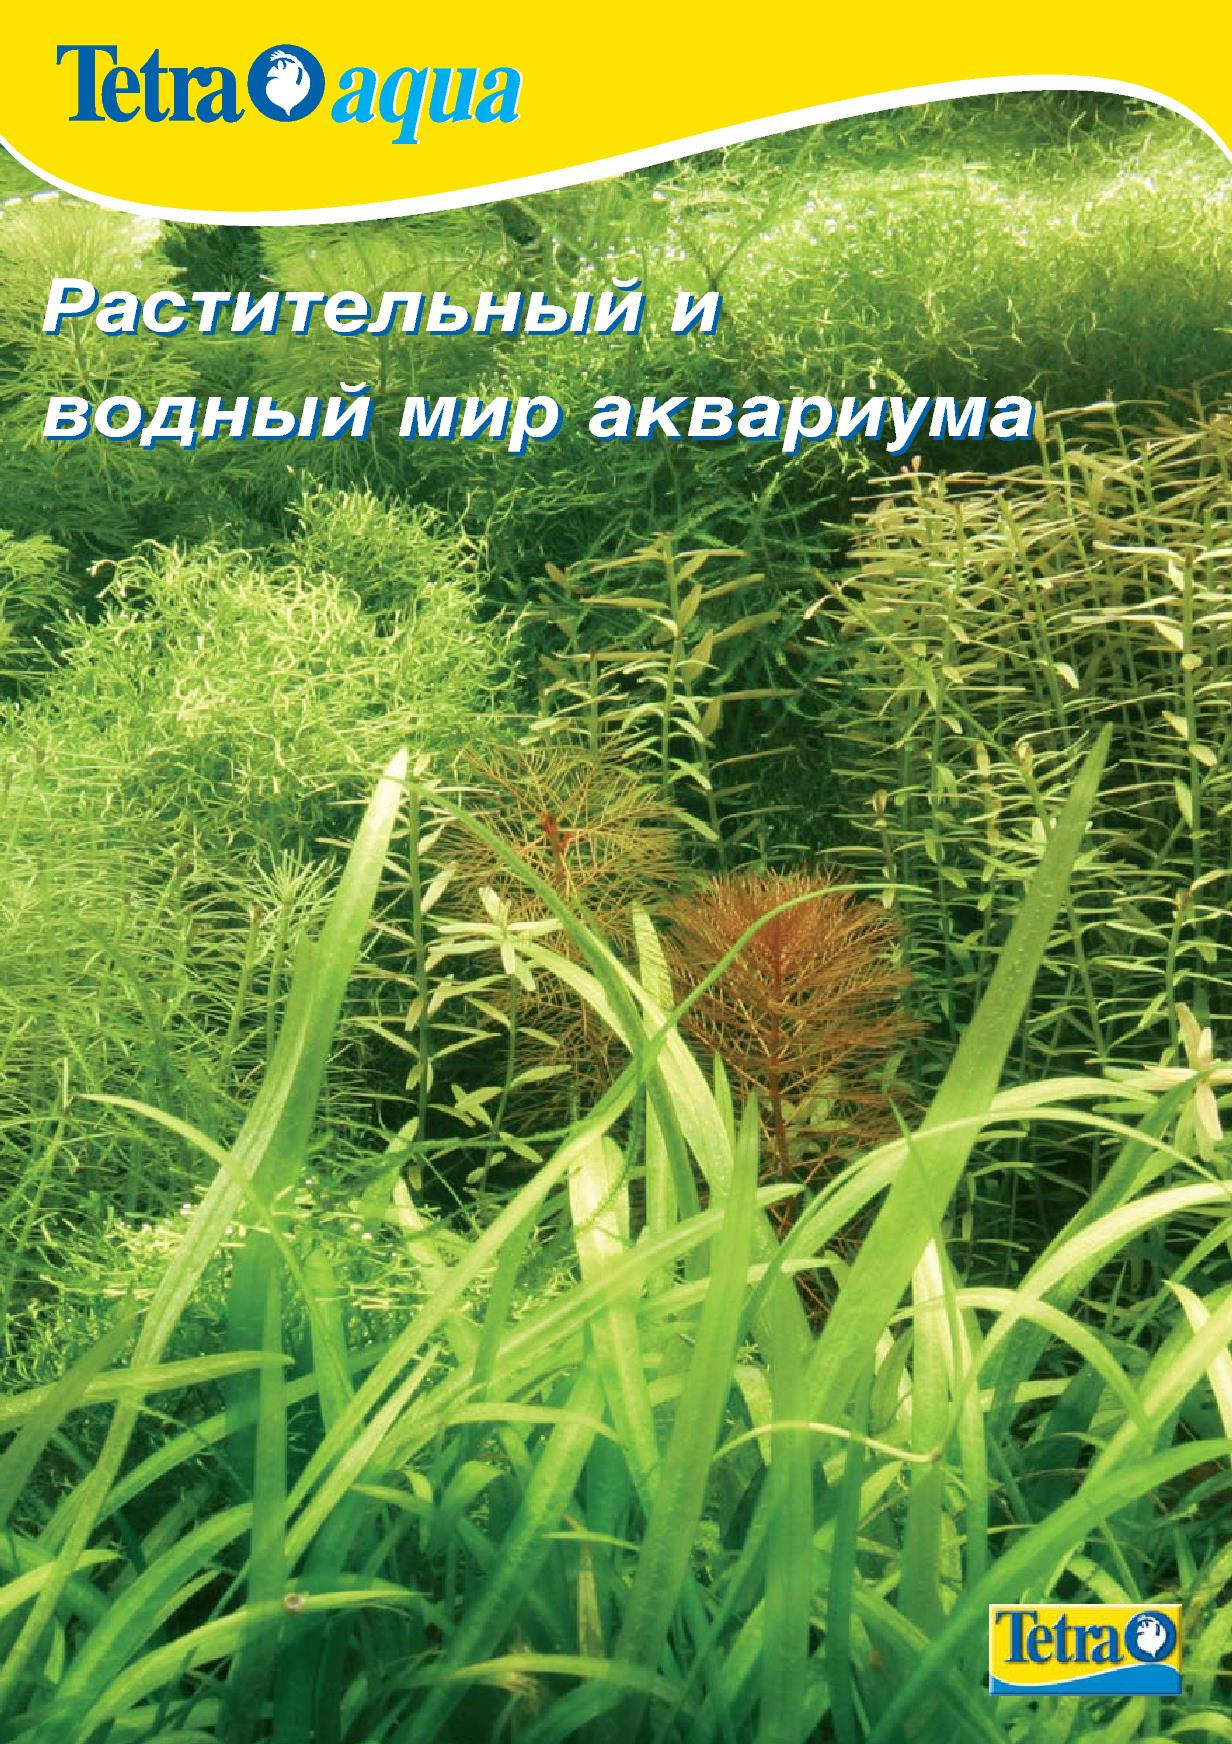 брошюра тетра об аквариумных растениях